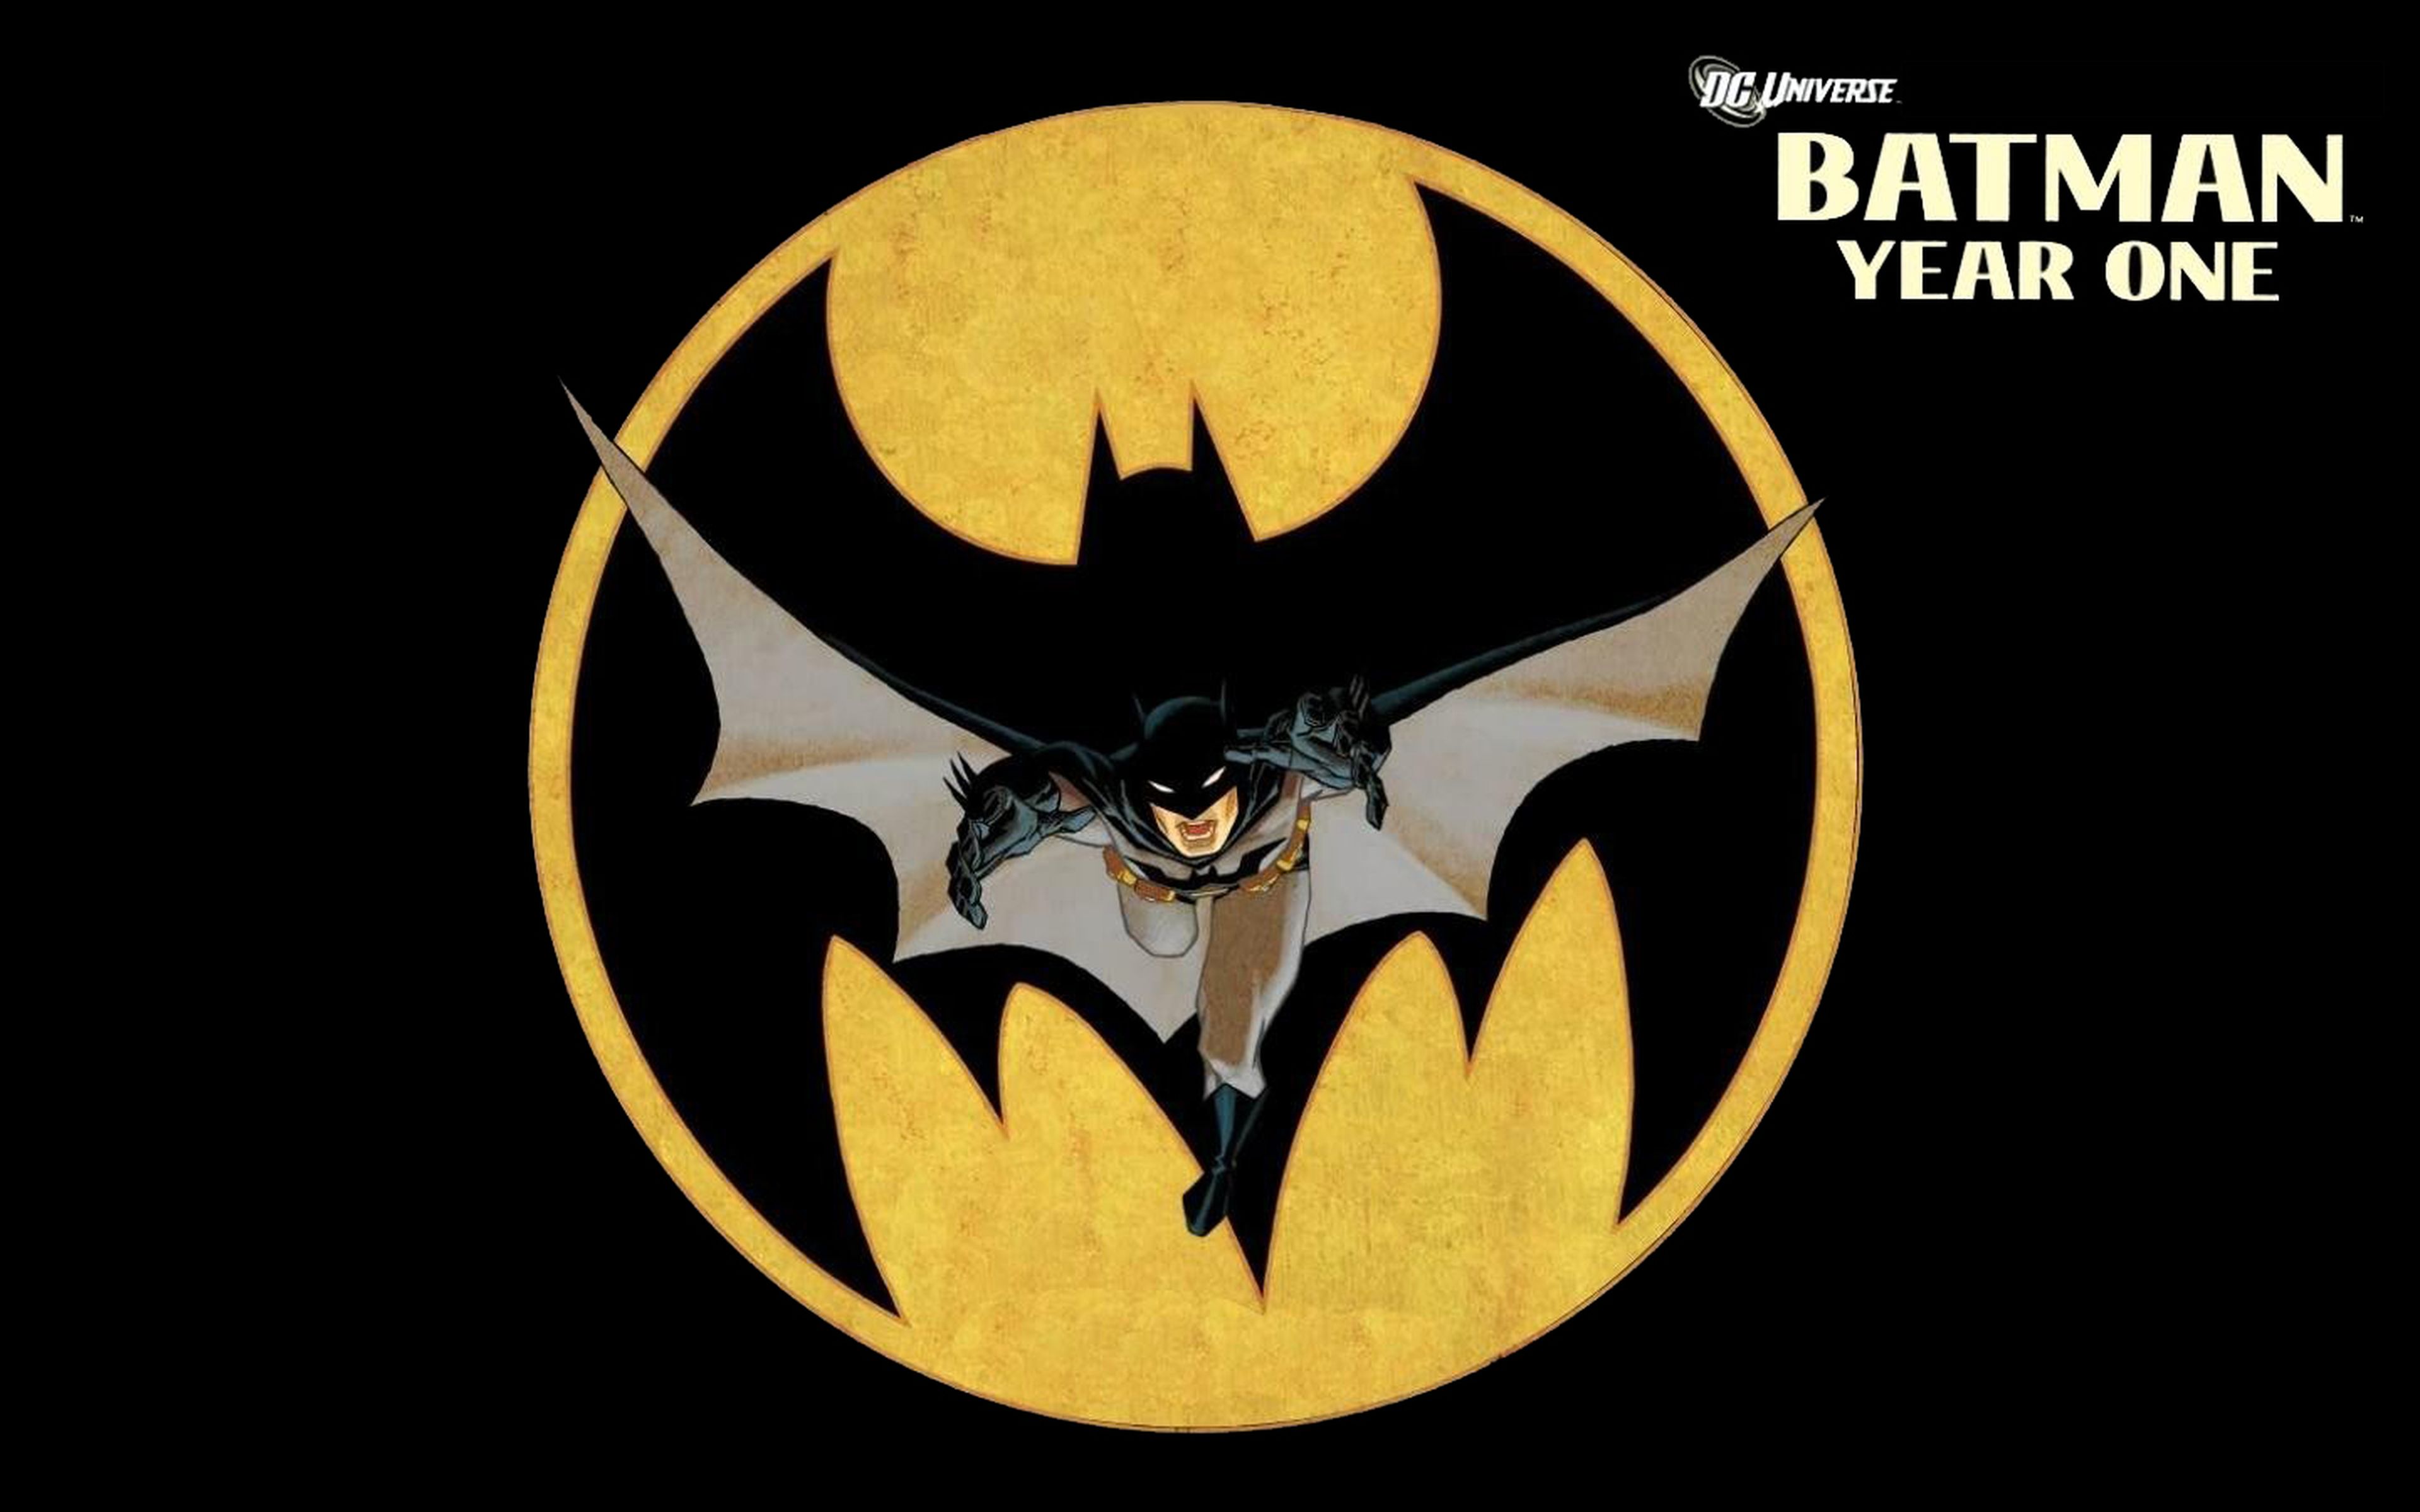 Los Mejores Cómics: Batman, Año Uno